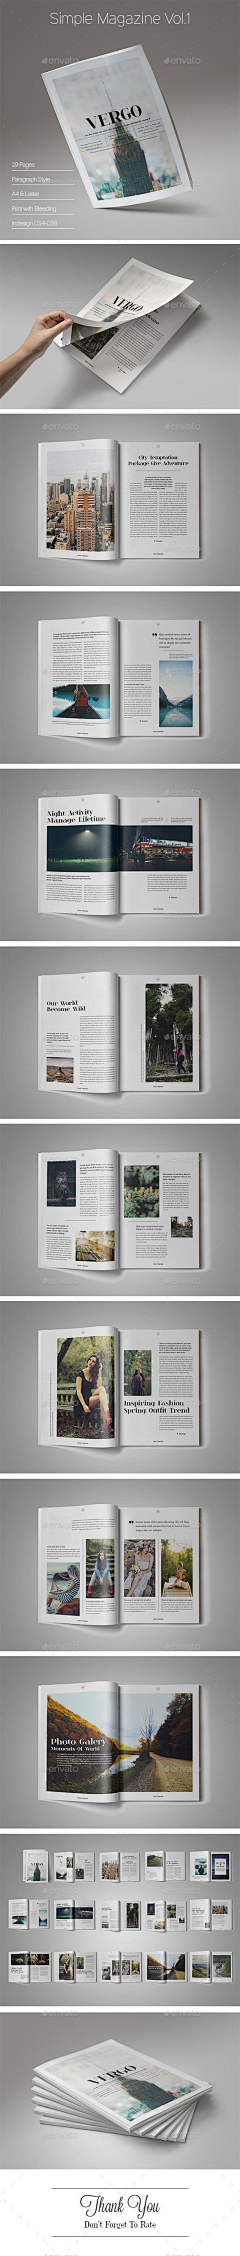 版式设计网采集到书刊杂志版式设计